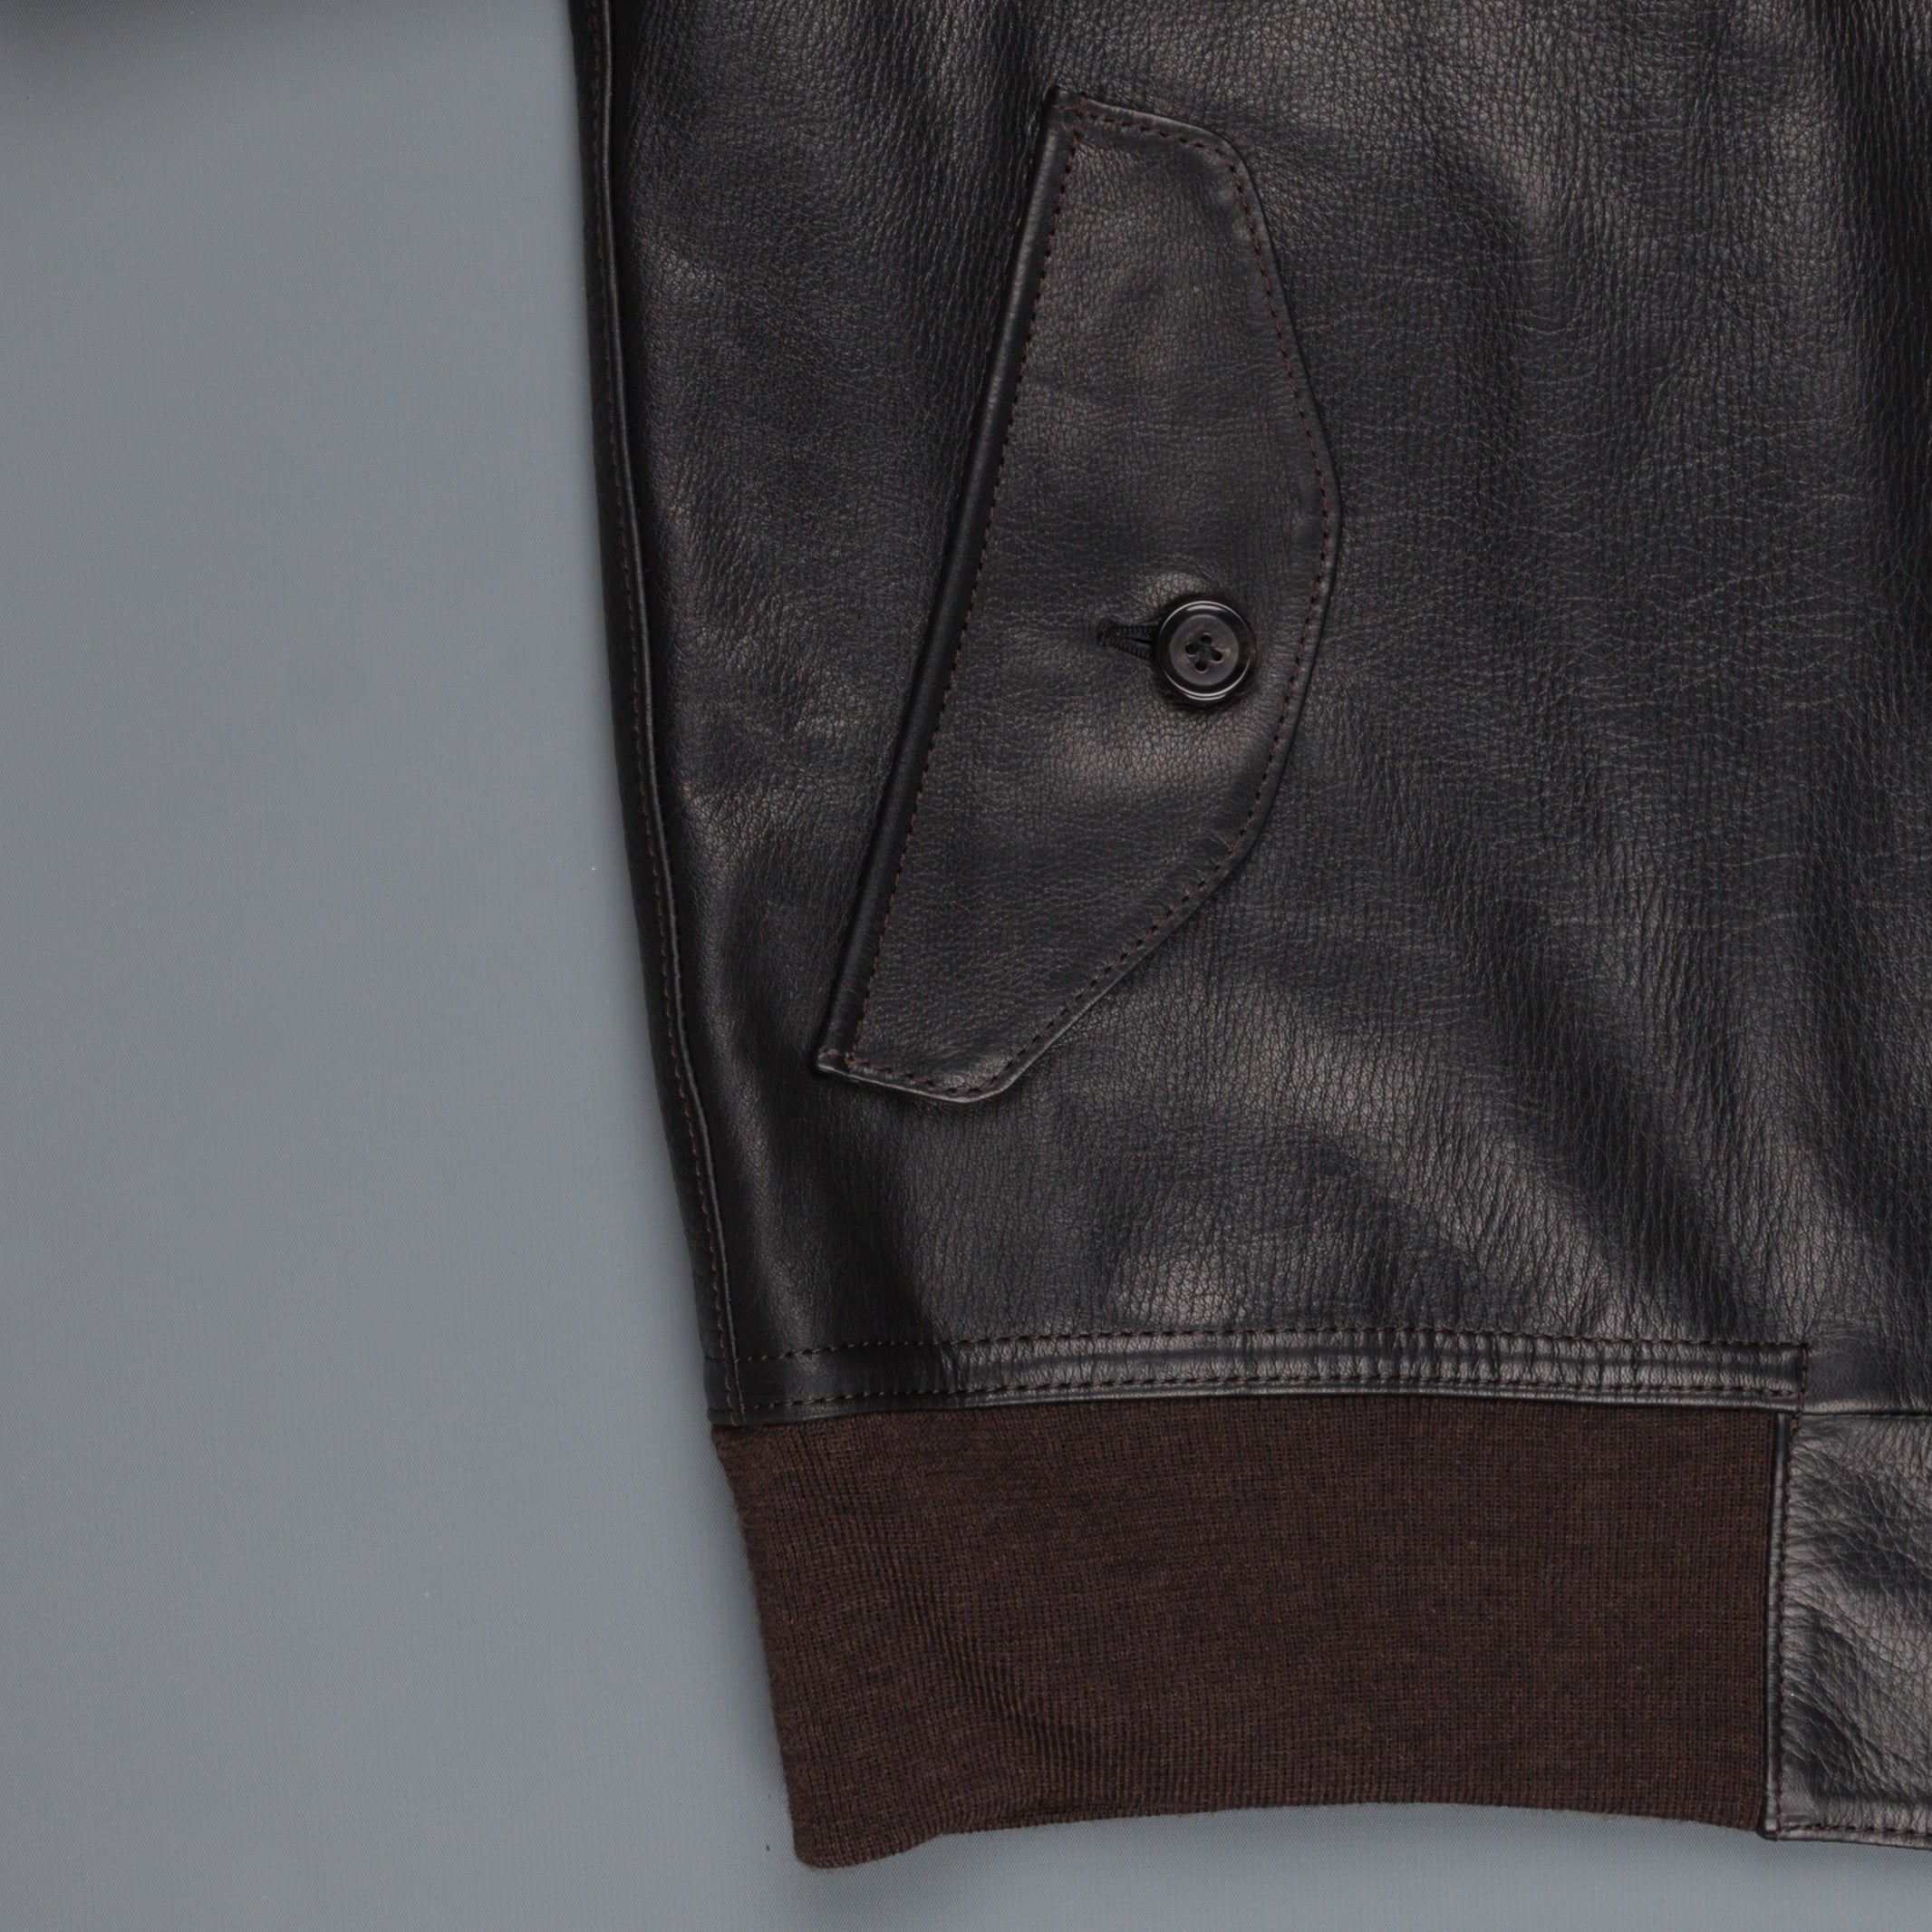 Orgueil Sport jacket Black Or-4067 – Frans Boone Store